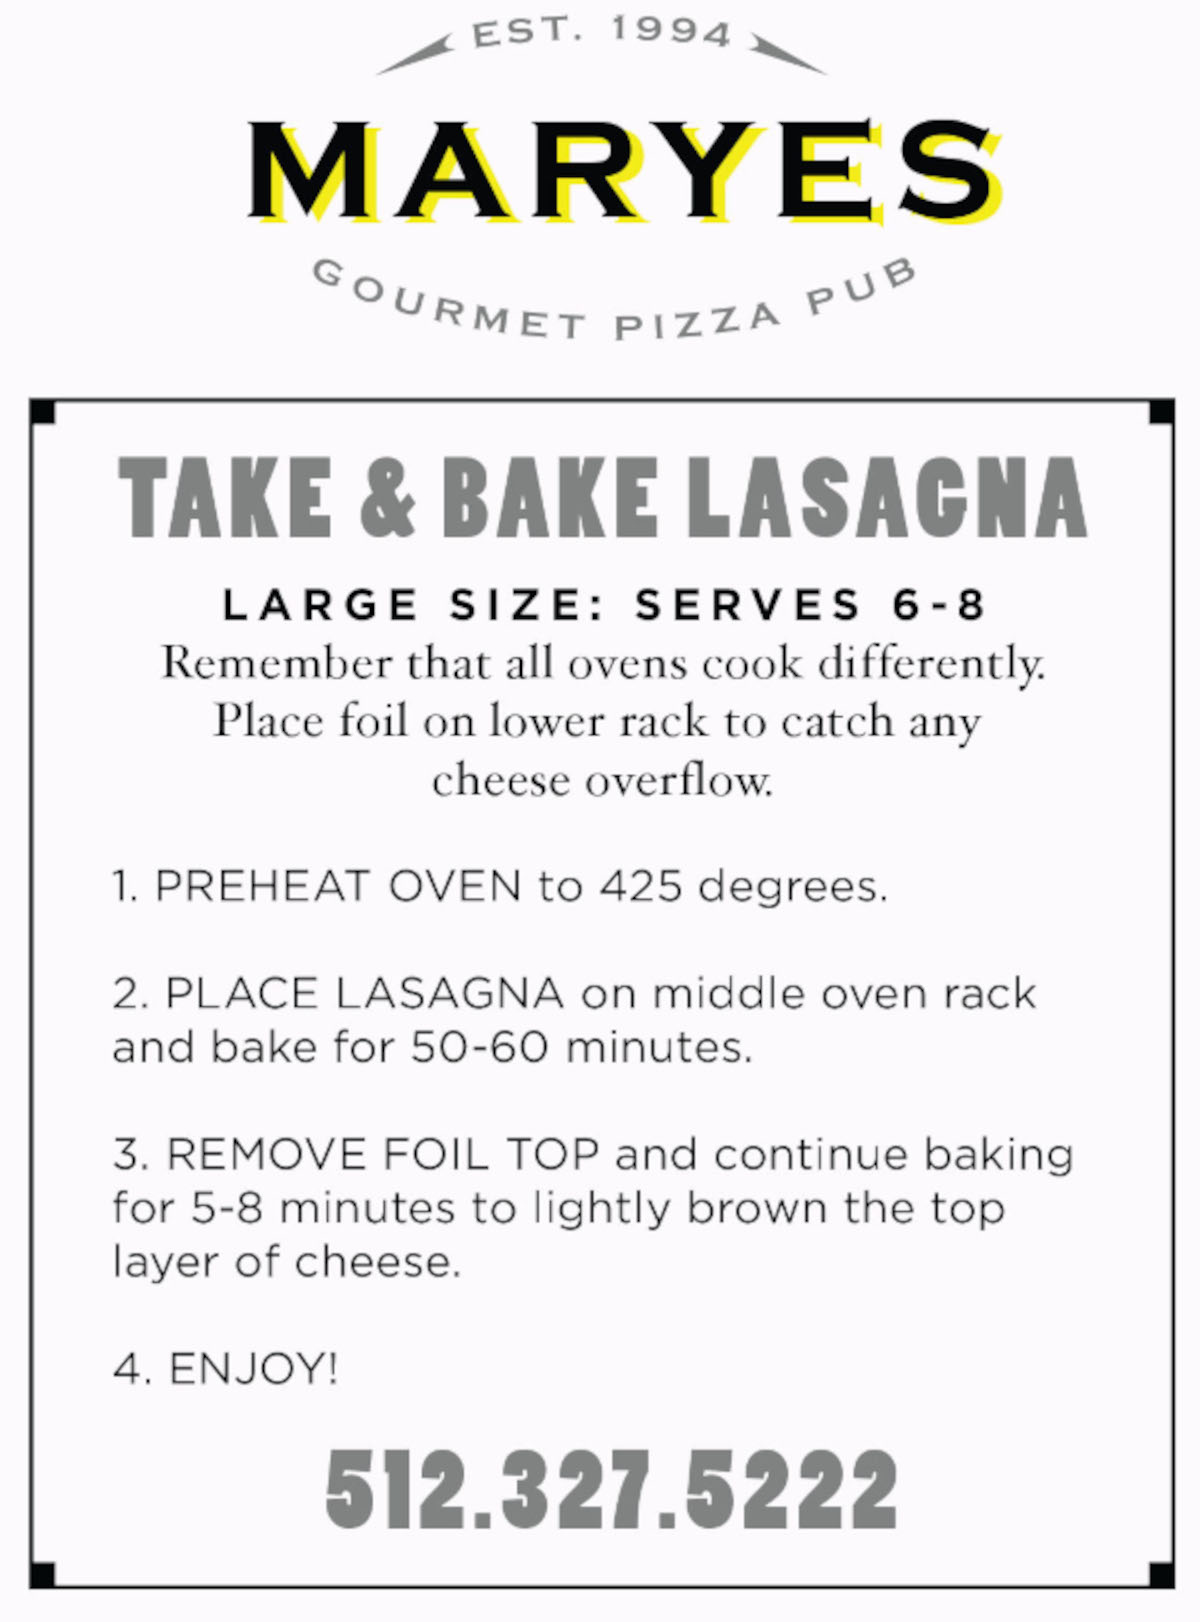 Take & Bake Lasagna Large